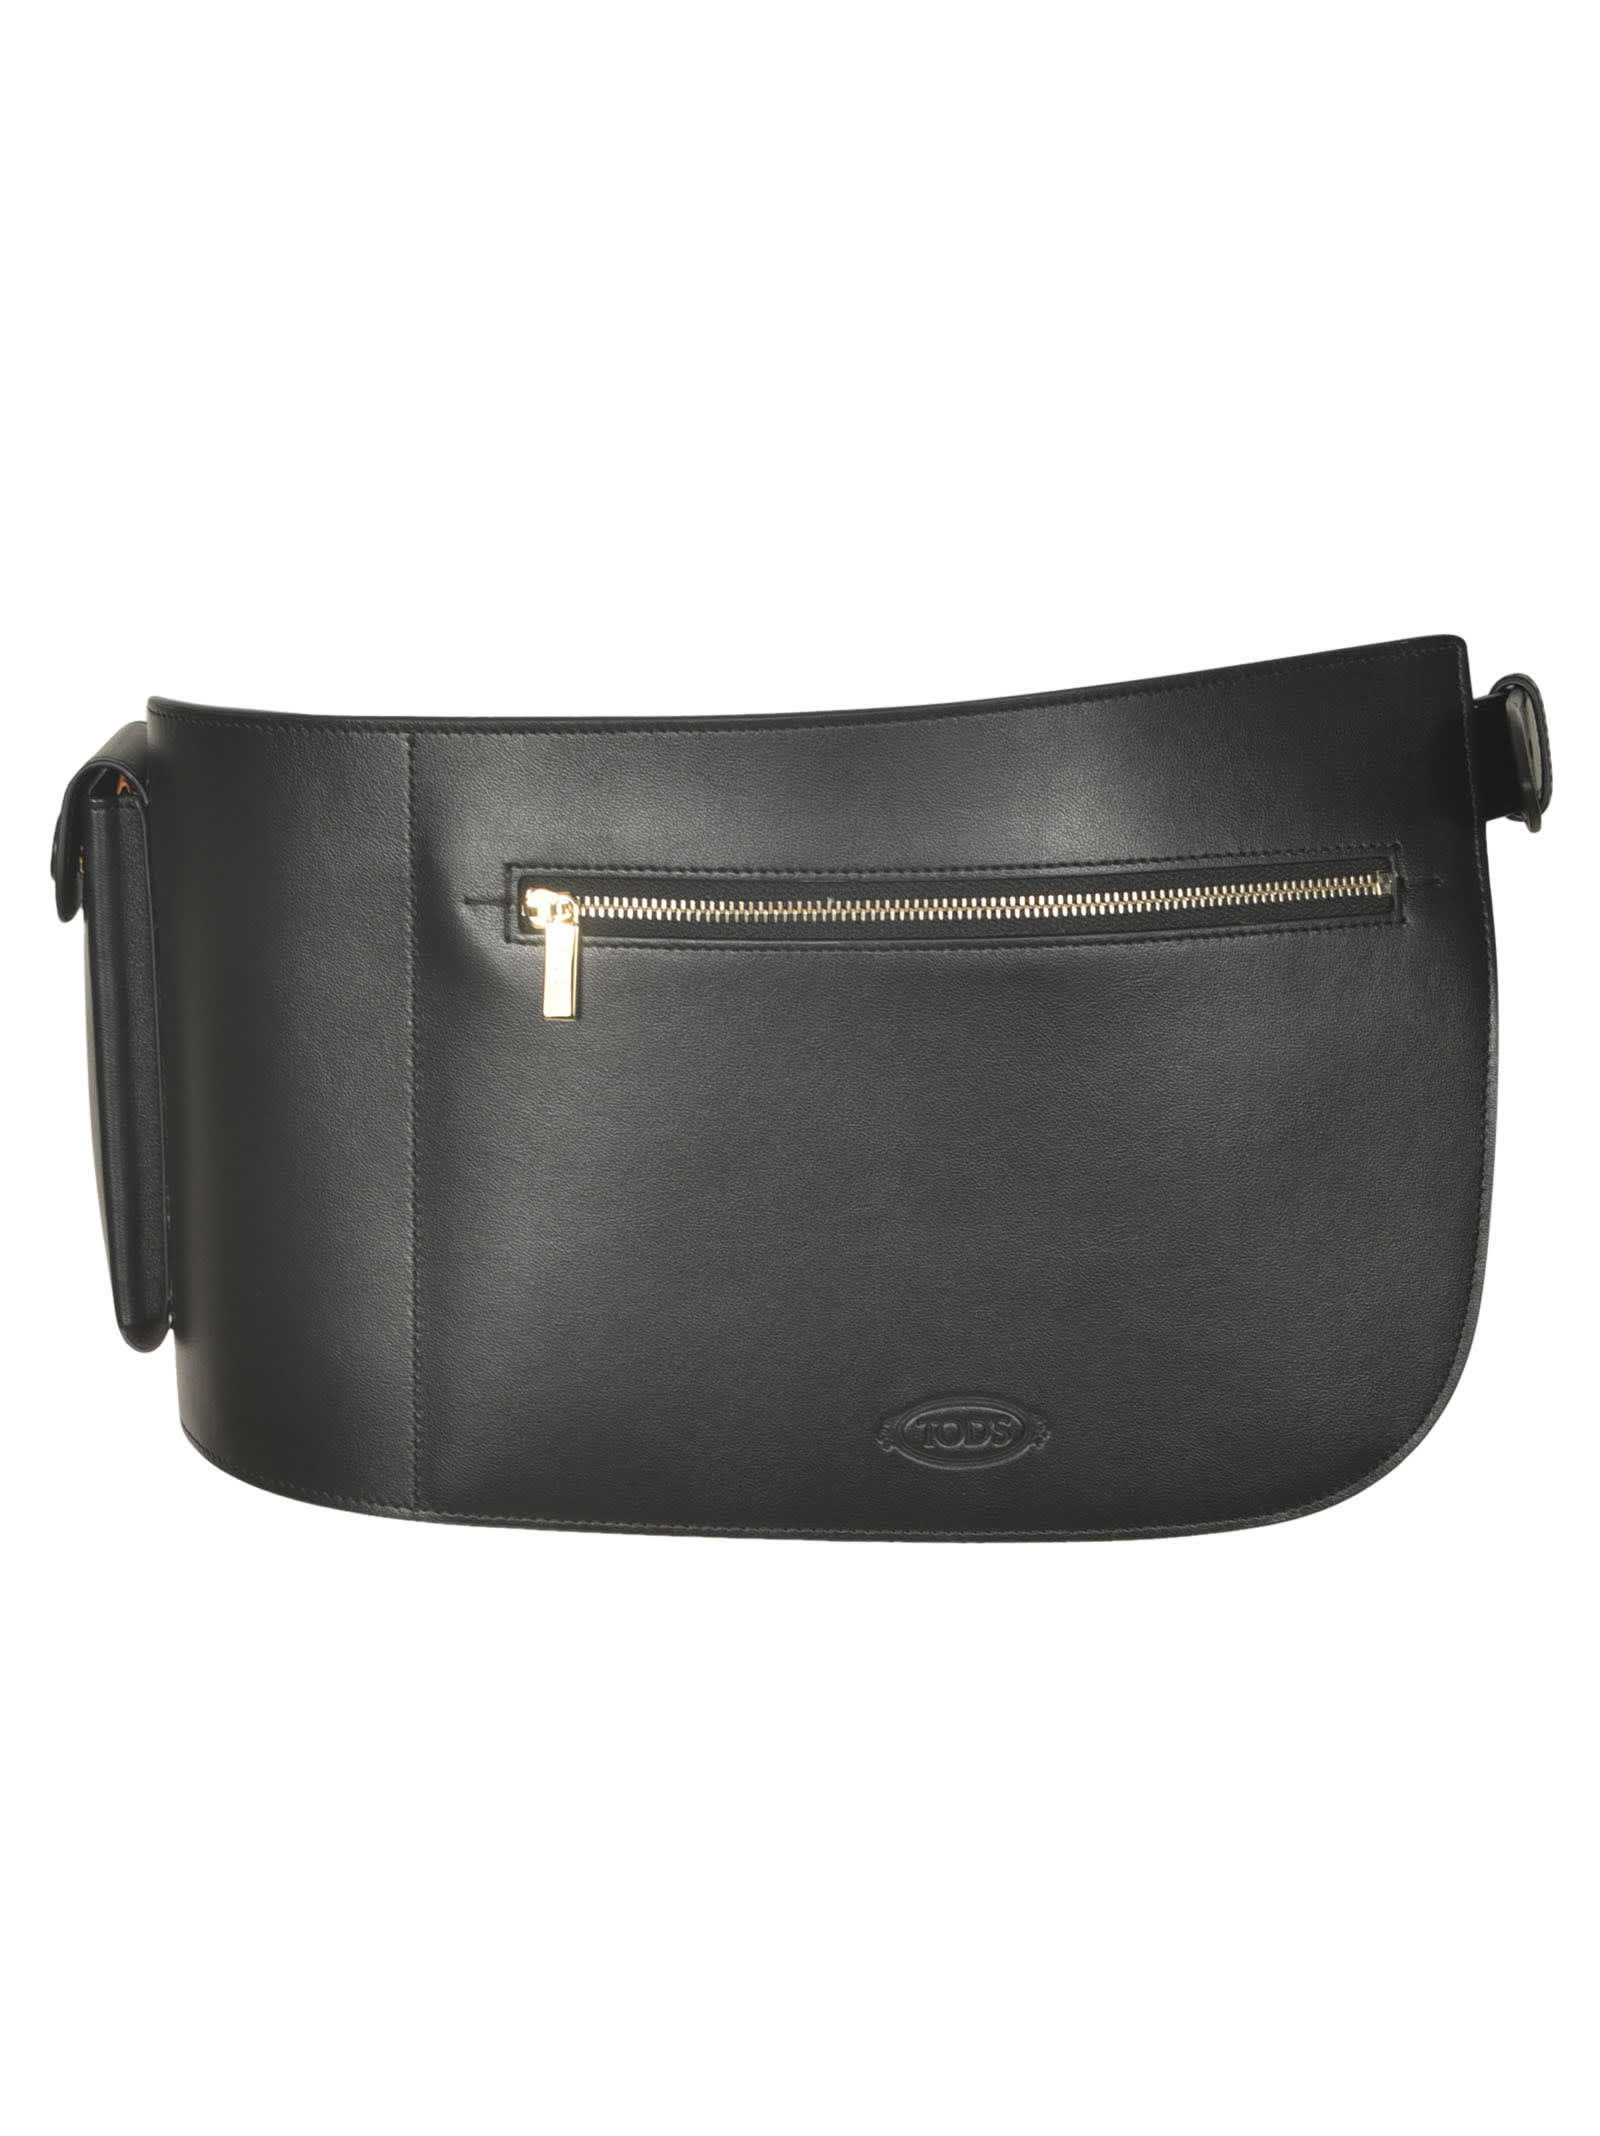 Adjustable Side Belt Bag